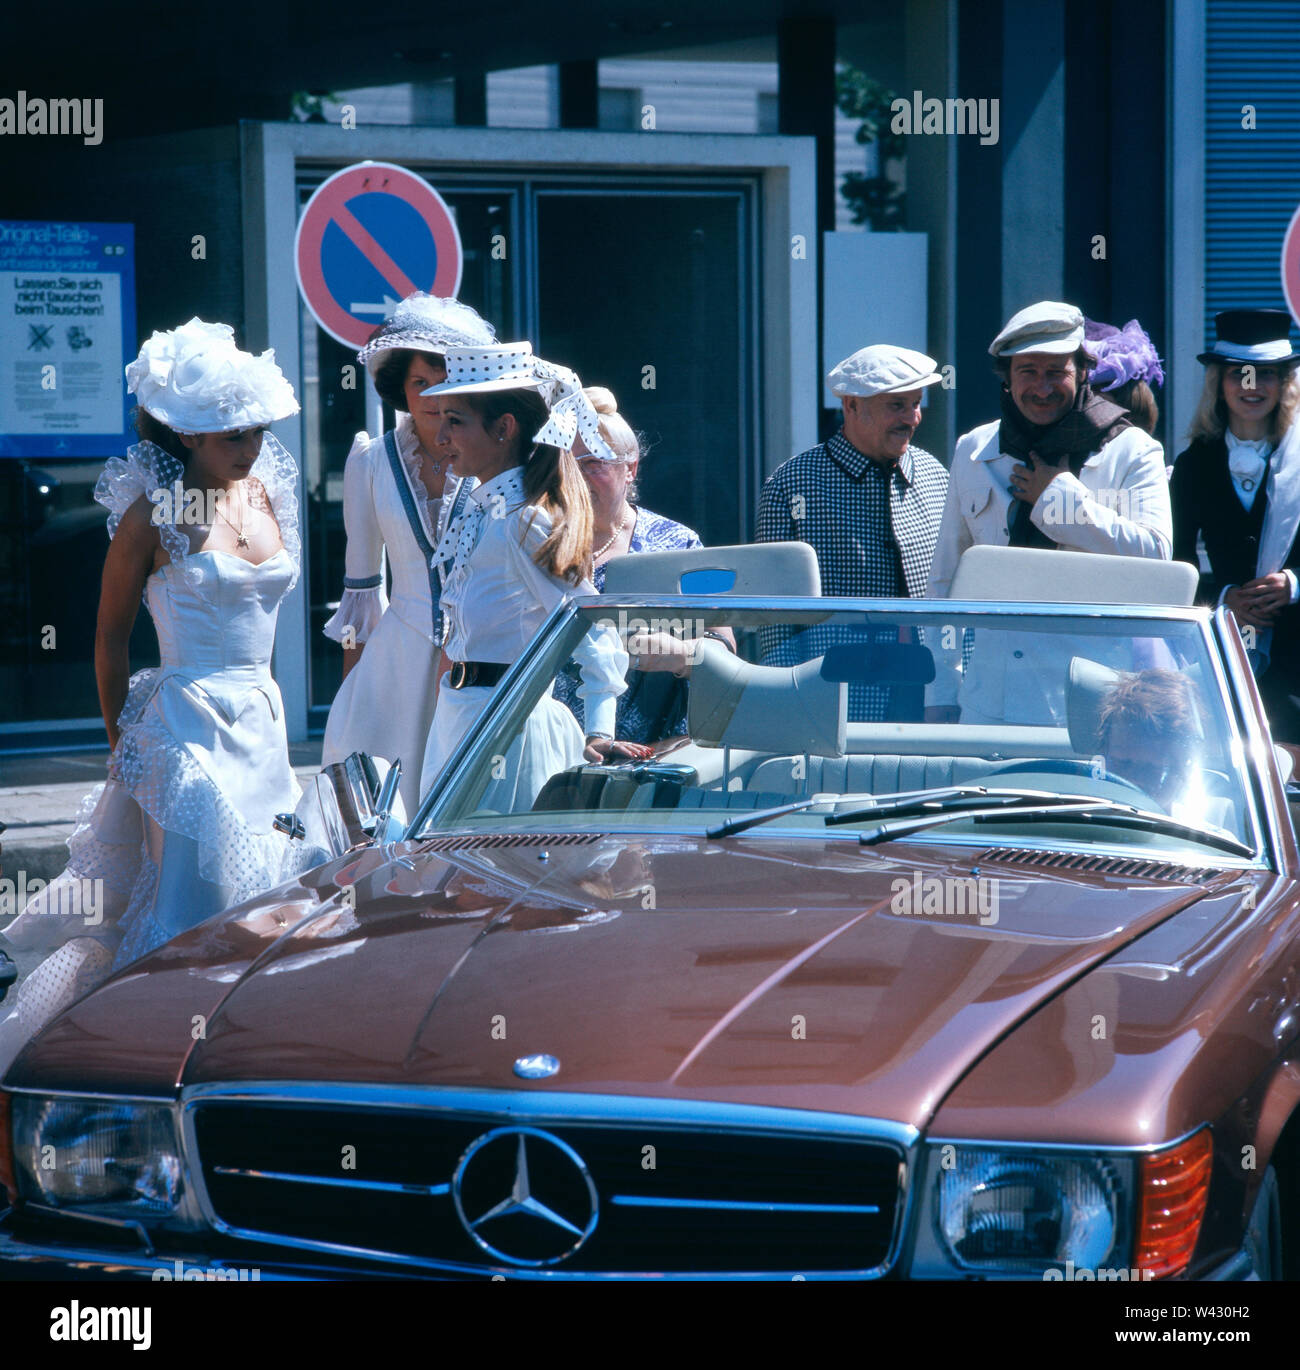 Eine Hochzeitsgesellschaft steht neben einem 1986er Mercedes-Benz 300SL Cabriolet während einer Oldtimermesse in München Ende der 1980er Jahre.  A wedding party is next to a 1986 Mercedes-Benz 300SL convertible during a vintage car show in Munich in the late 1980s. Stock Photo